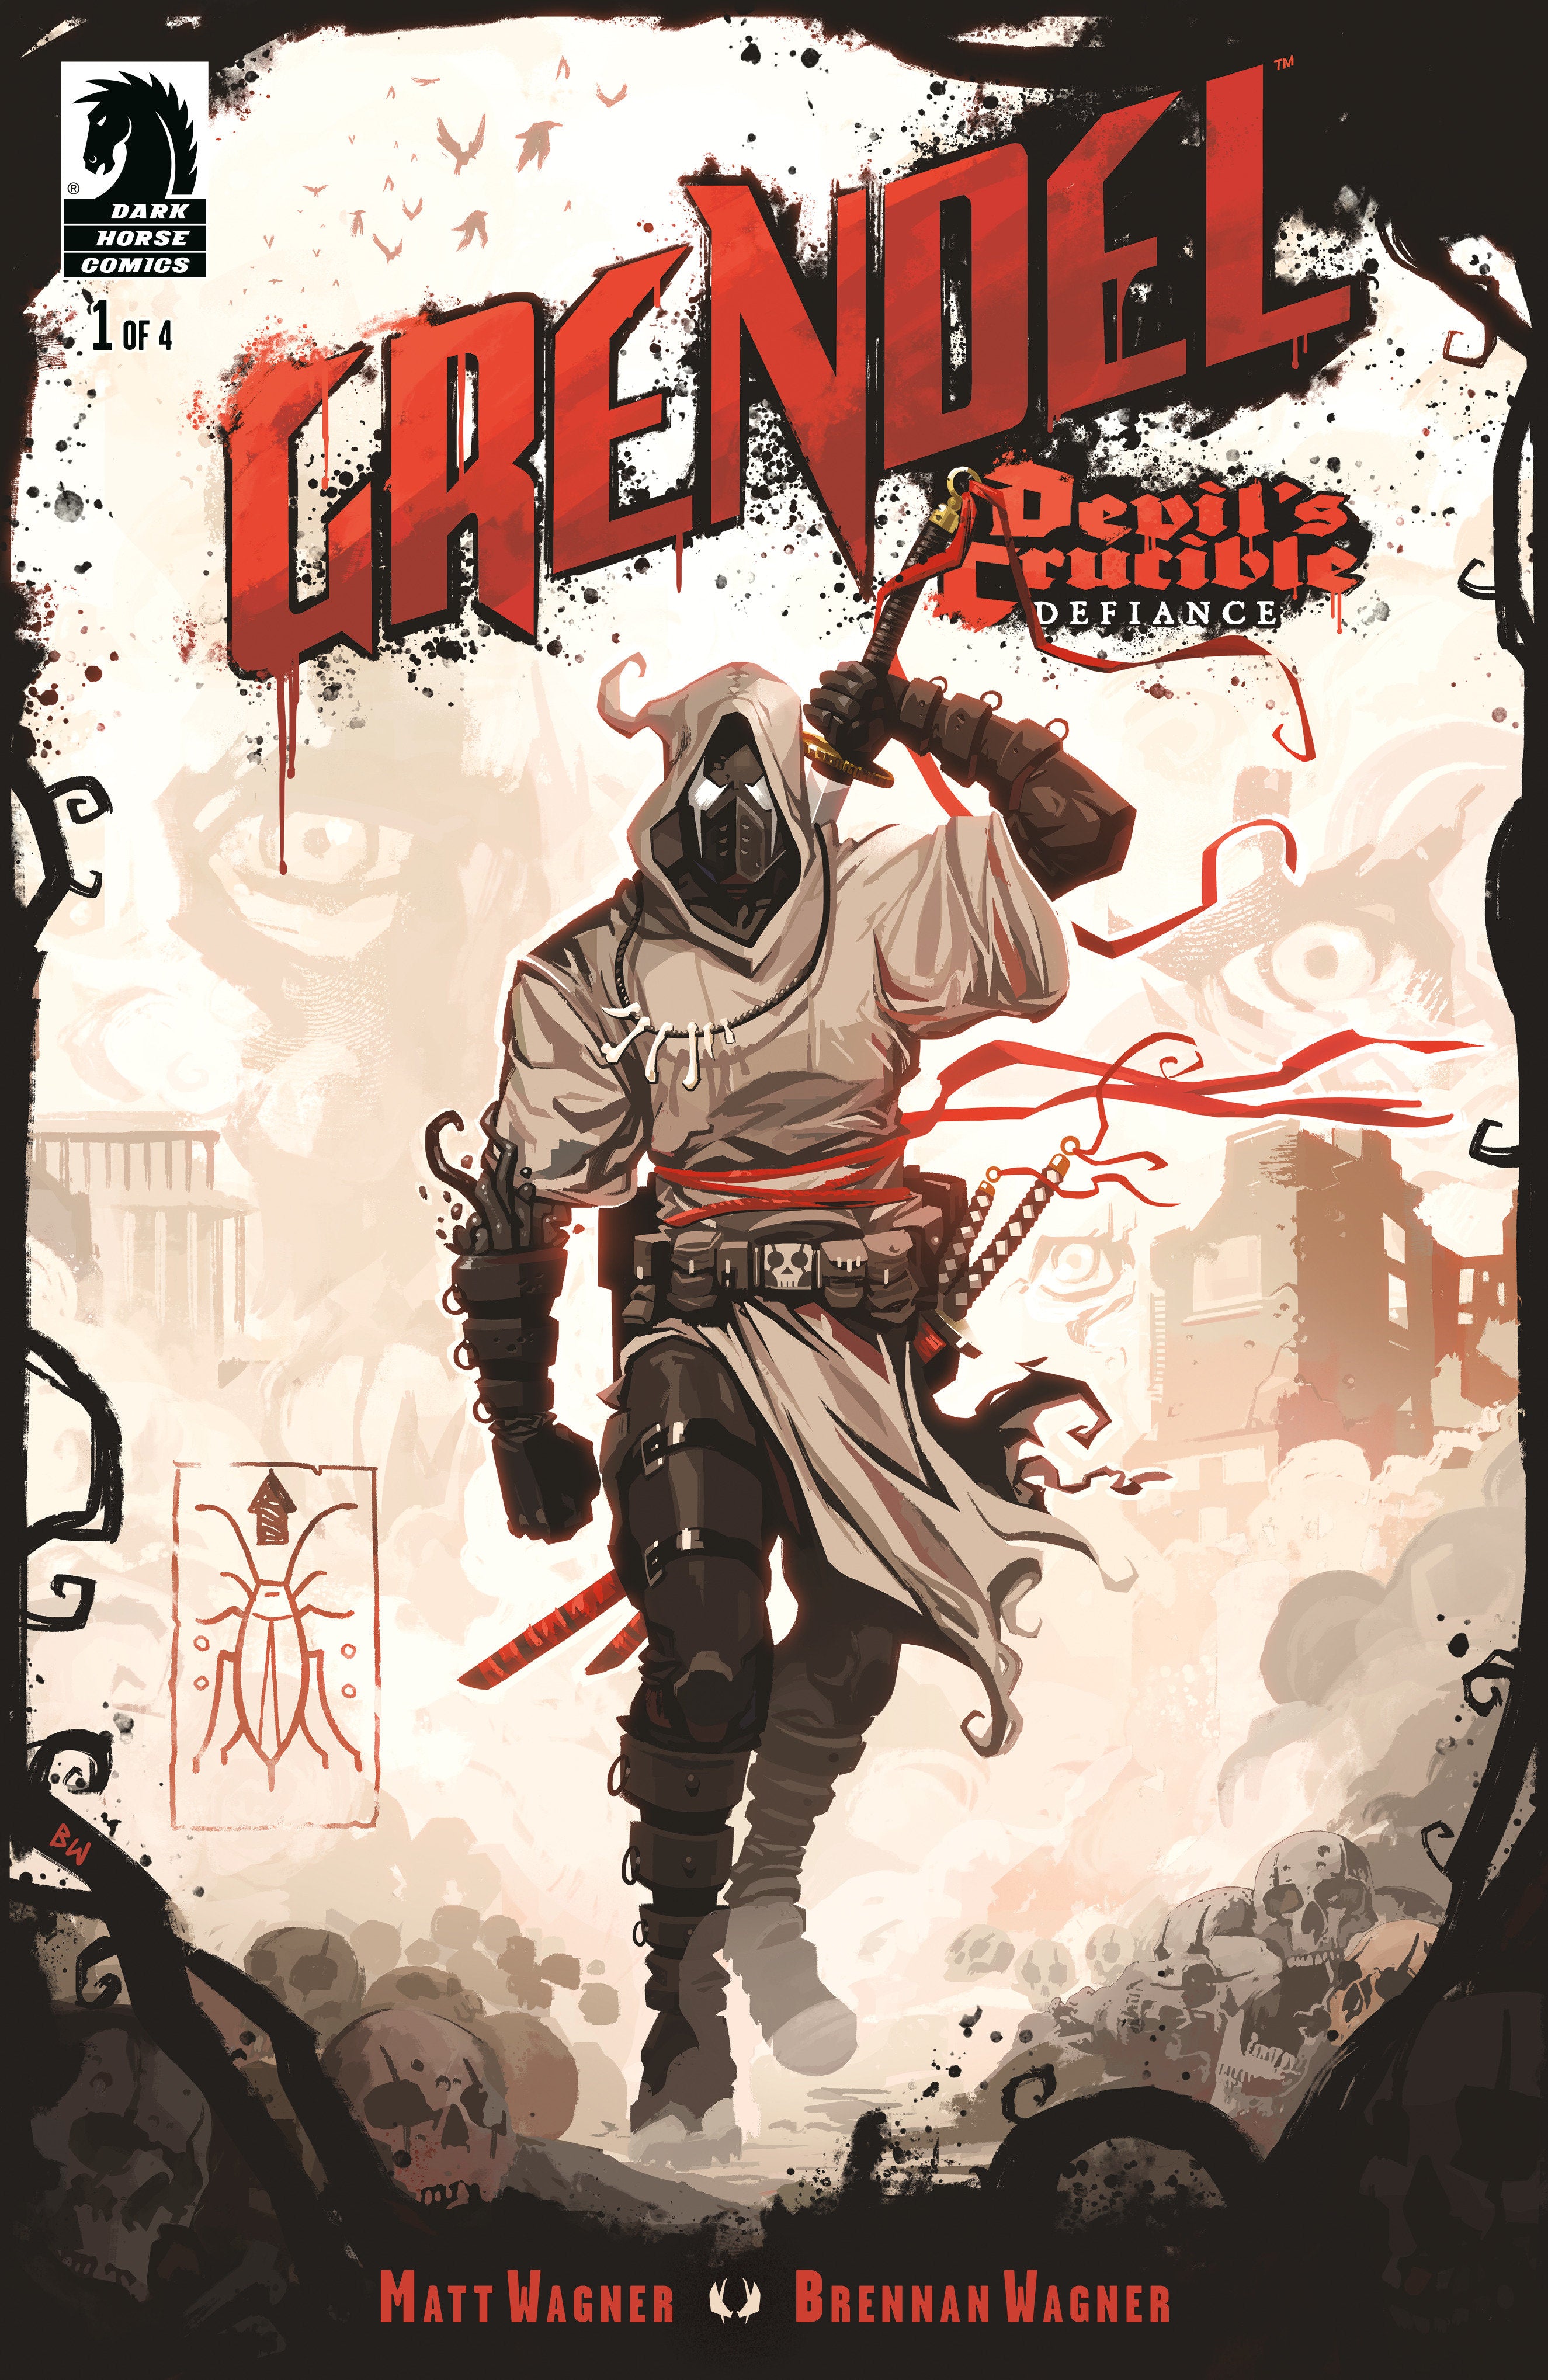 Grendel: Devil'S Crucible--Defiance #1 (Cover B) (Brennan Wagner)